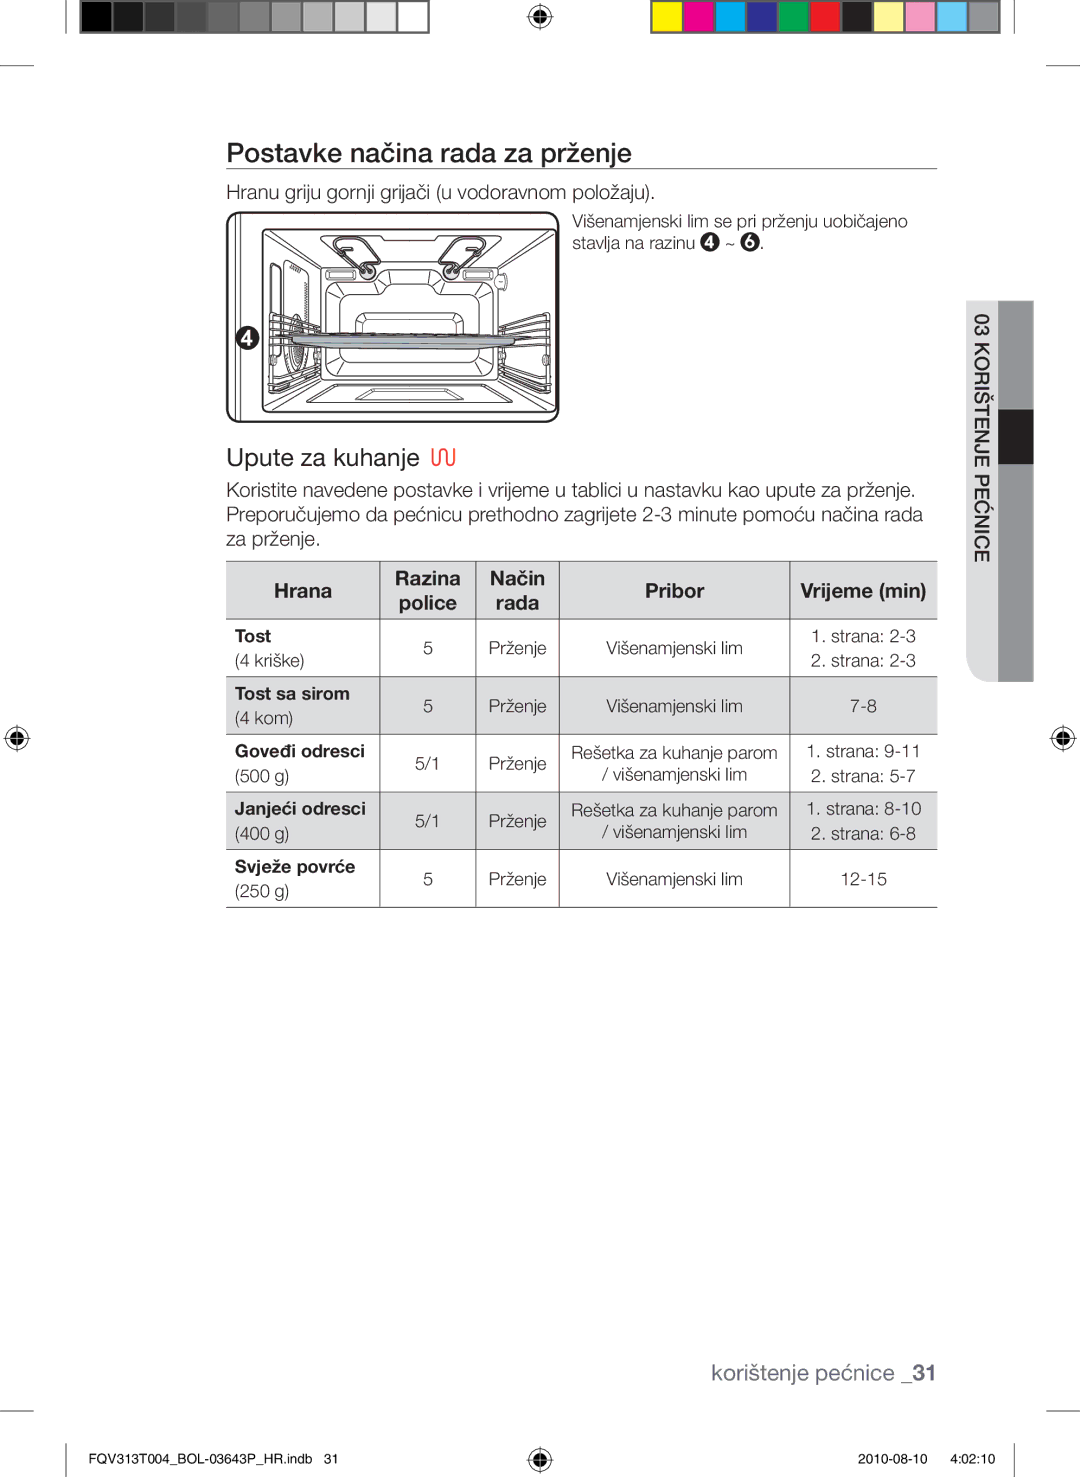 Samsung FQV313T004/BOL manual Postavke načina rada za prženje, Hranu griju gornji grijači u vodoravnom položaju 